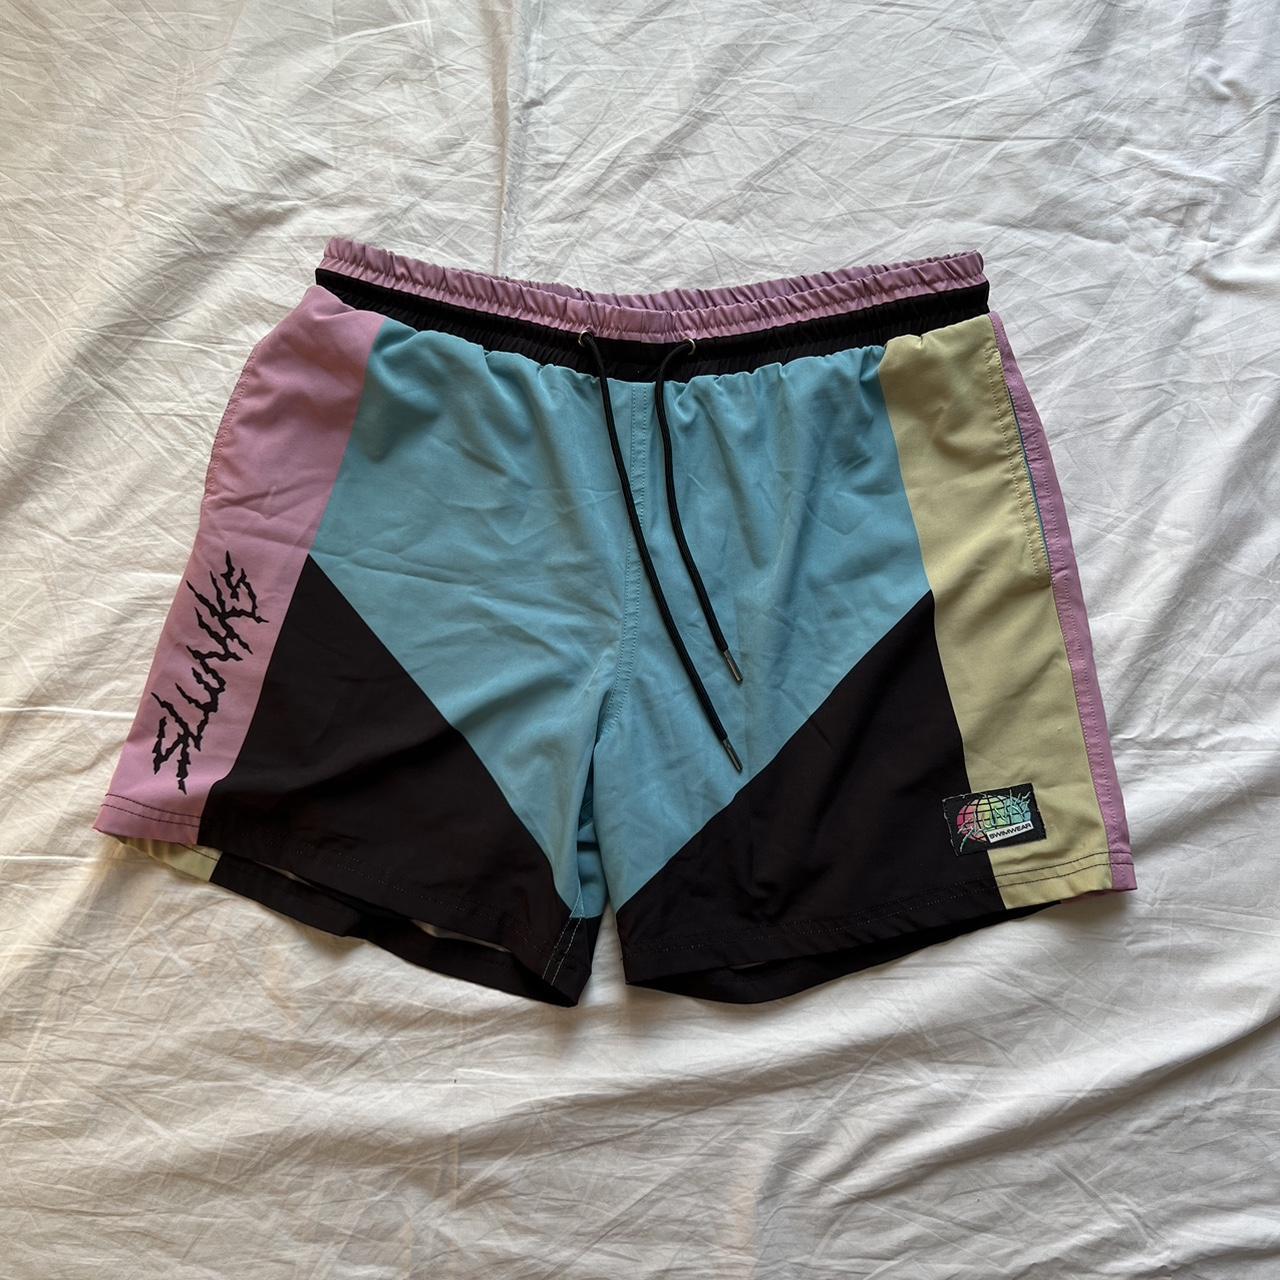 Slunks shorts 90s style color block shorts Men’s... - Depop